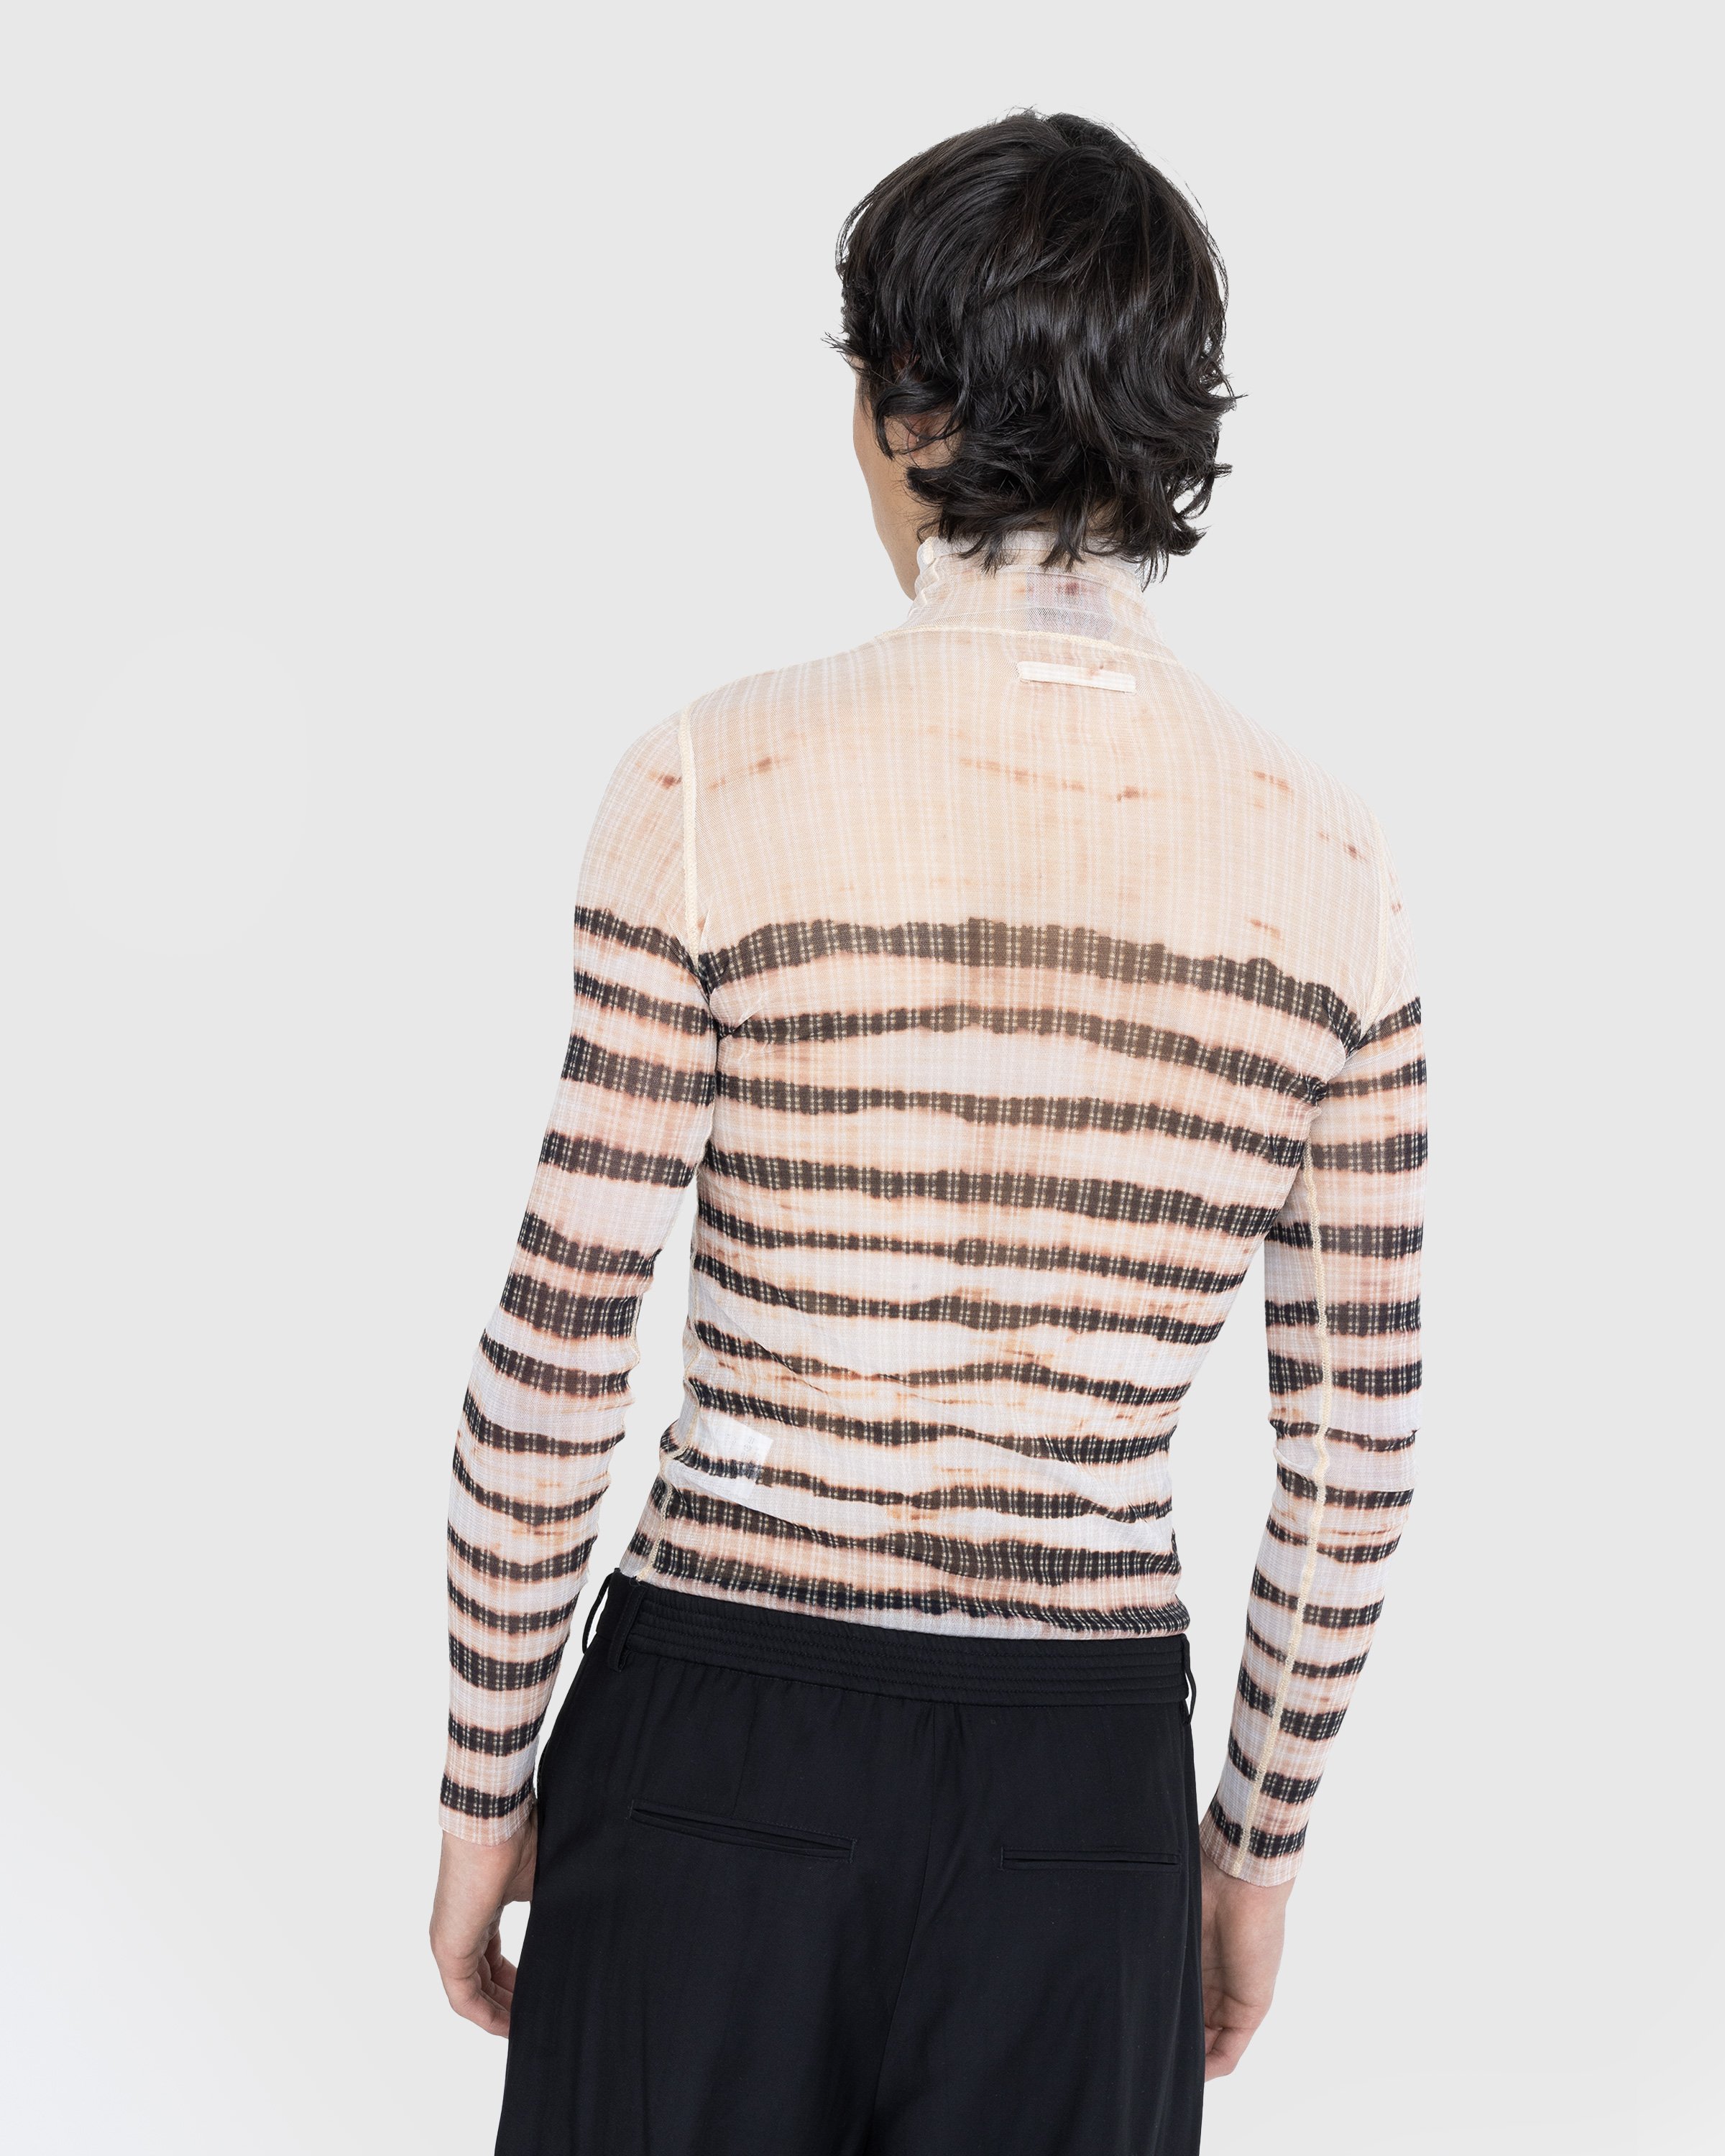 Jean Paul Gaultier - High Neck Longsleeve Printed Stripe Top Ecru/Brown - Clothing - Beige - Image 3